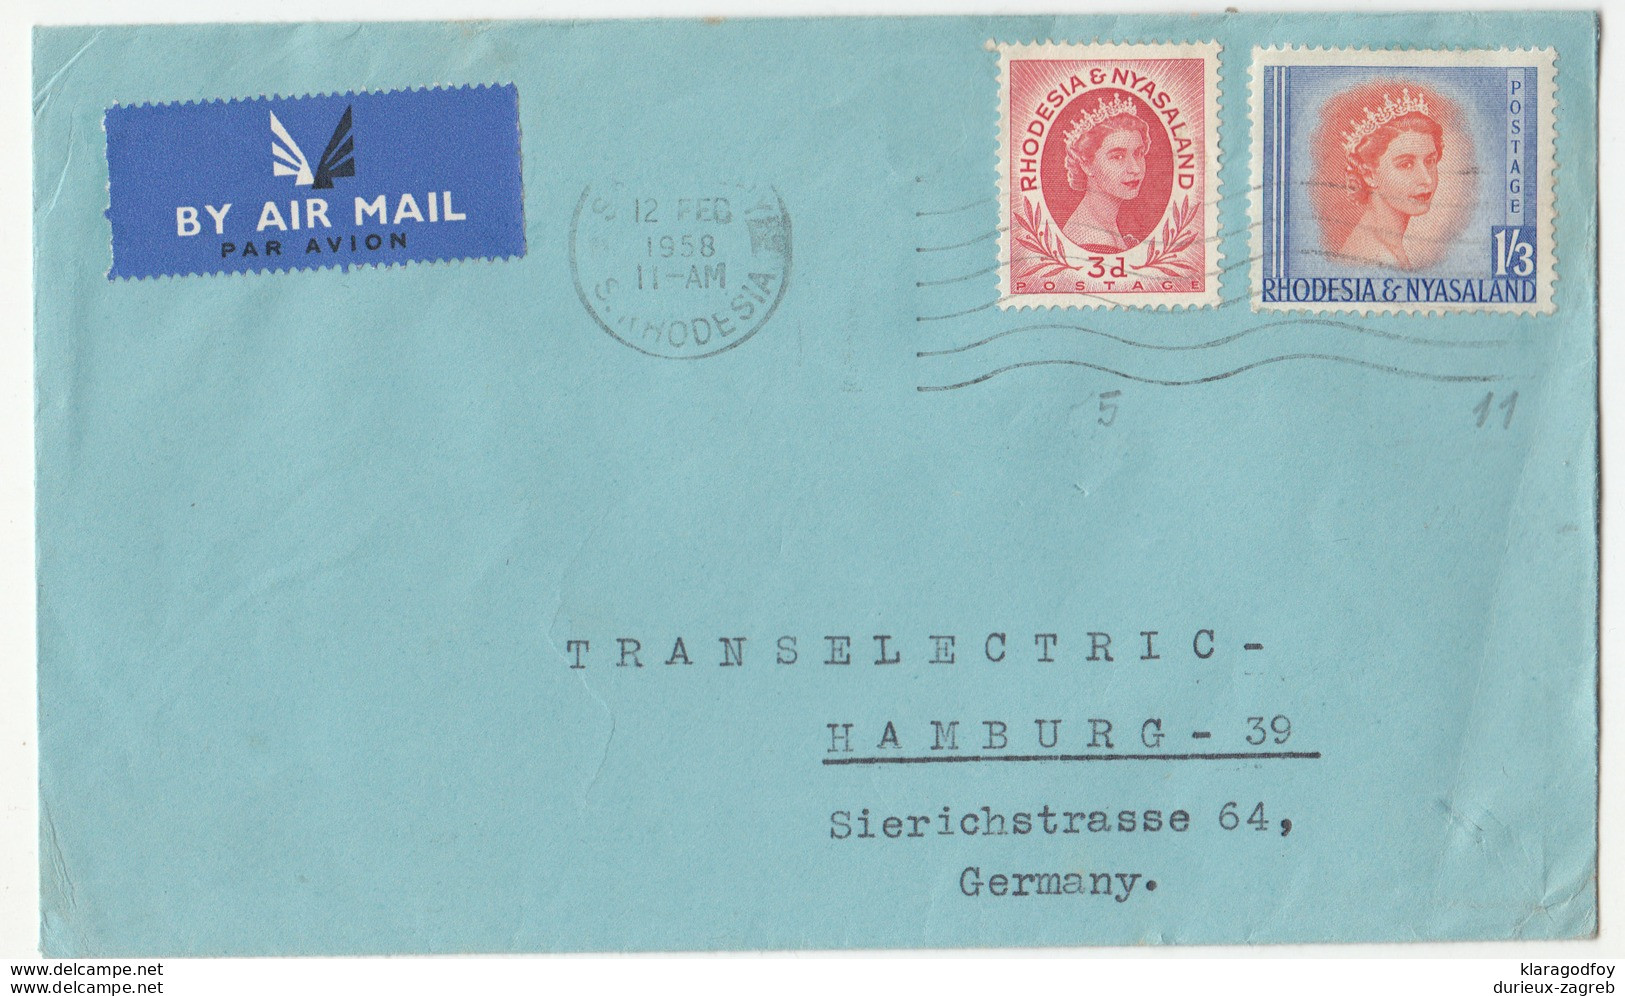 Rhodesia & Nyasaland, Letter Cover Airmail Travelled 1958 B180122 - Rhodesia & Nyasaland (1954-1963)